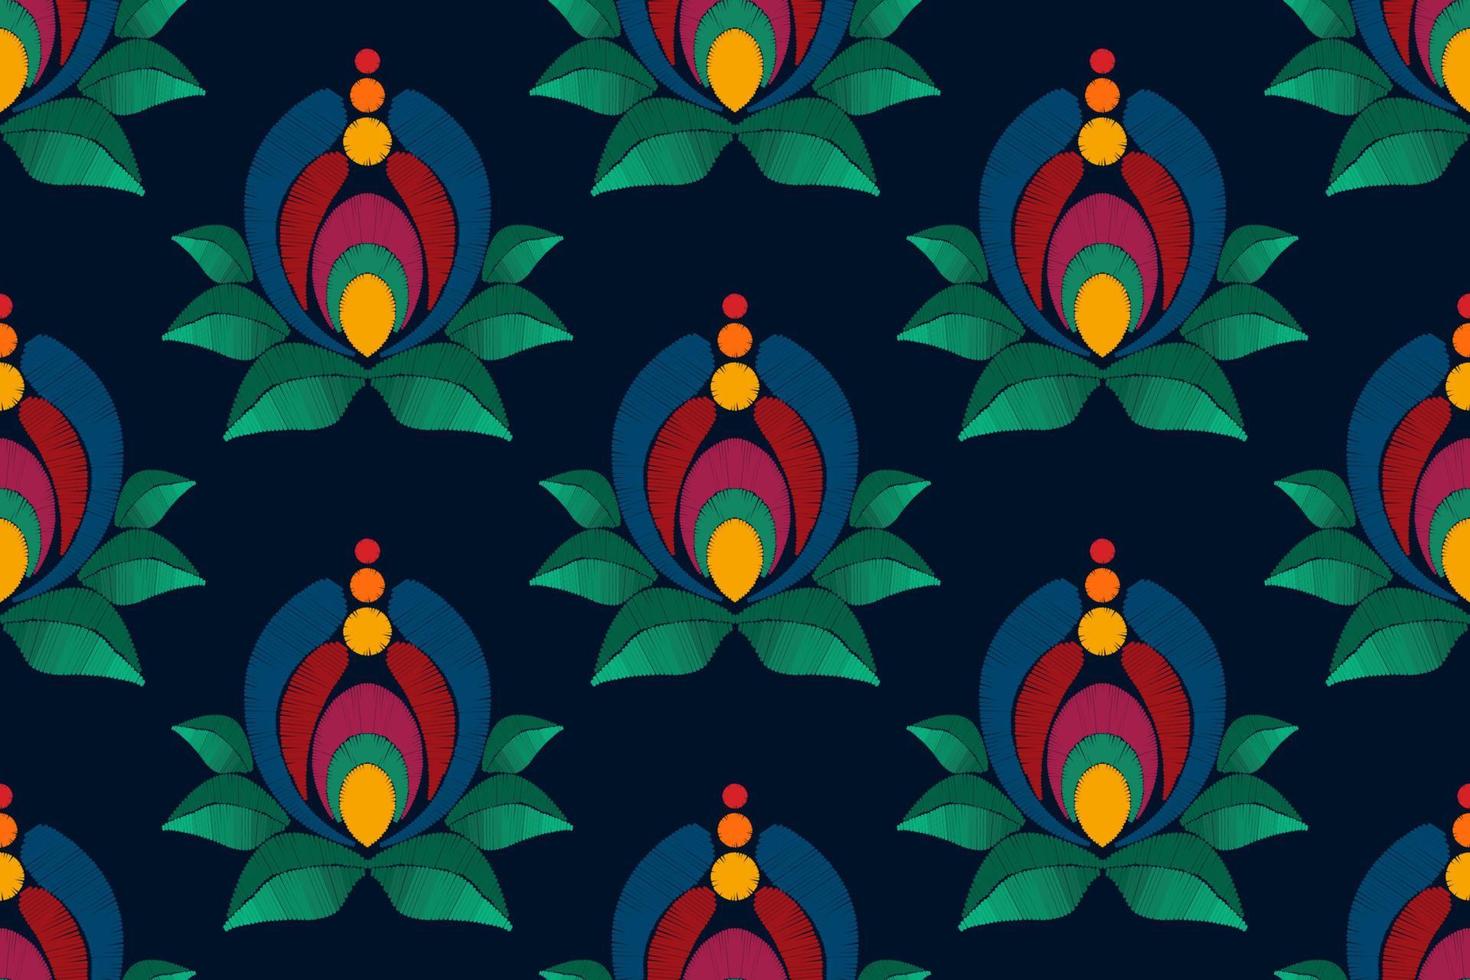 bloemen etnisch ikat naadloos patroon decoratie ontwerp. aztec kleding stof tapijt boho mandala's textiel decor behang. tribal inheems motief bloem decoratief traditioneel borduurwerk vector achtergrond